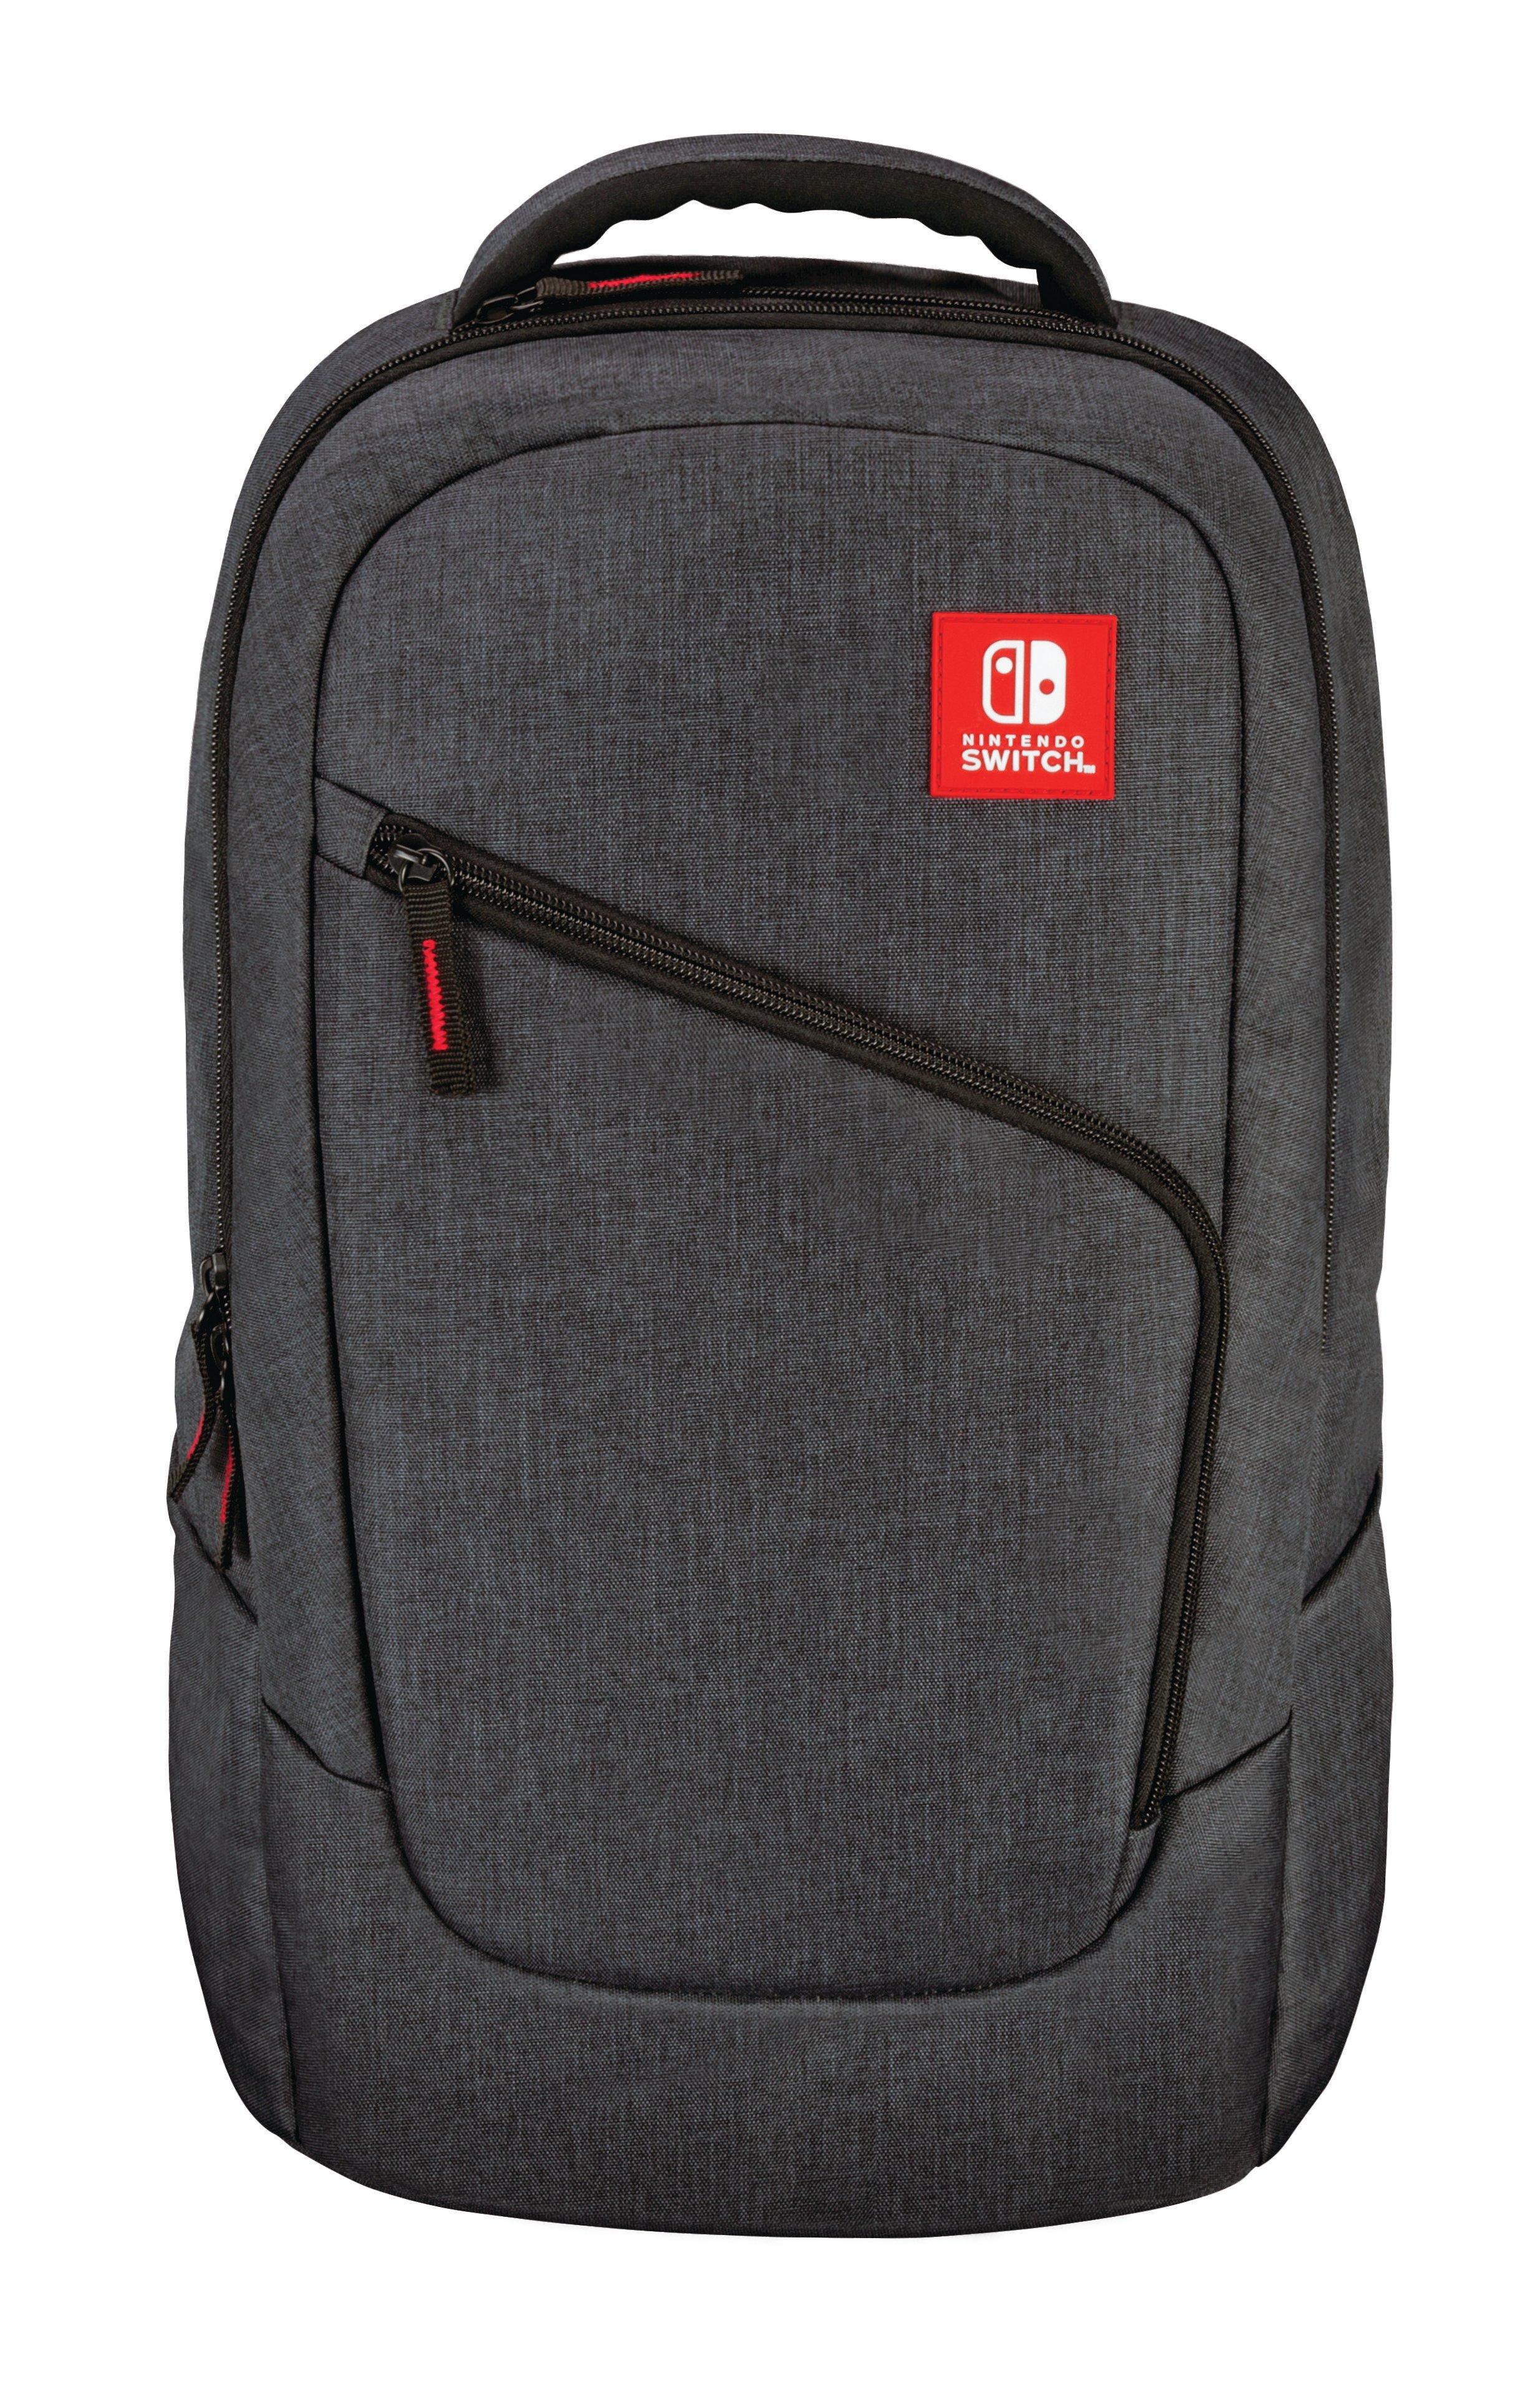 nintendo switch backpack gamestop